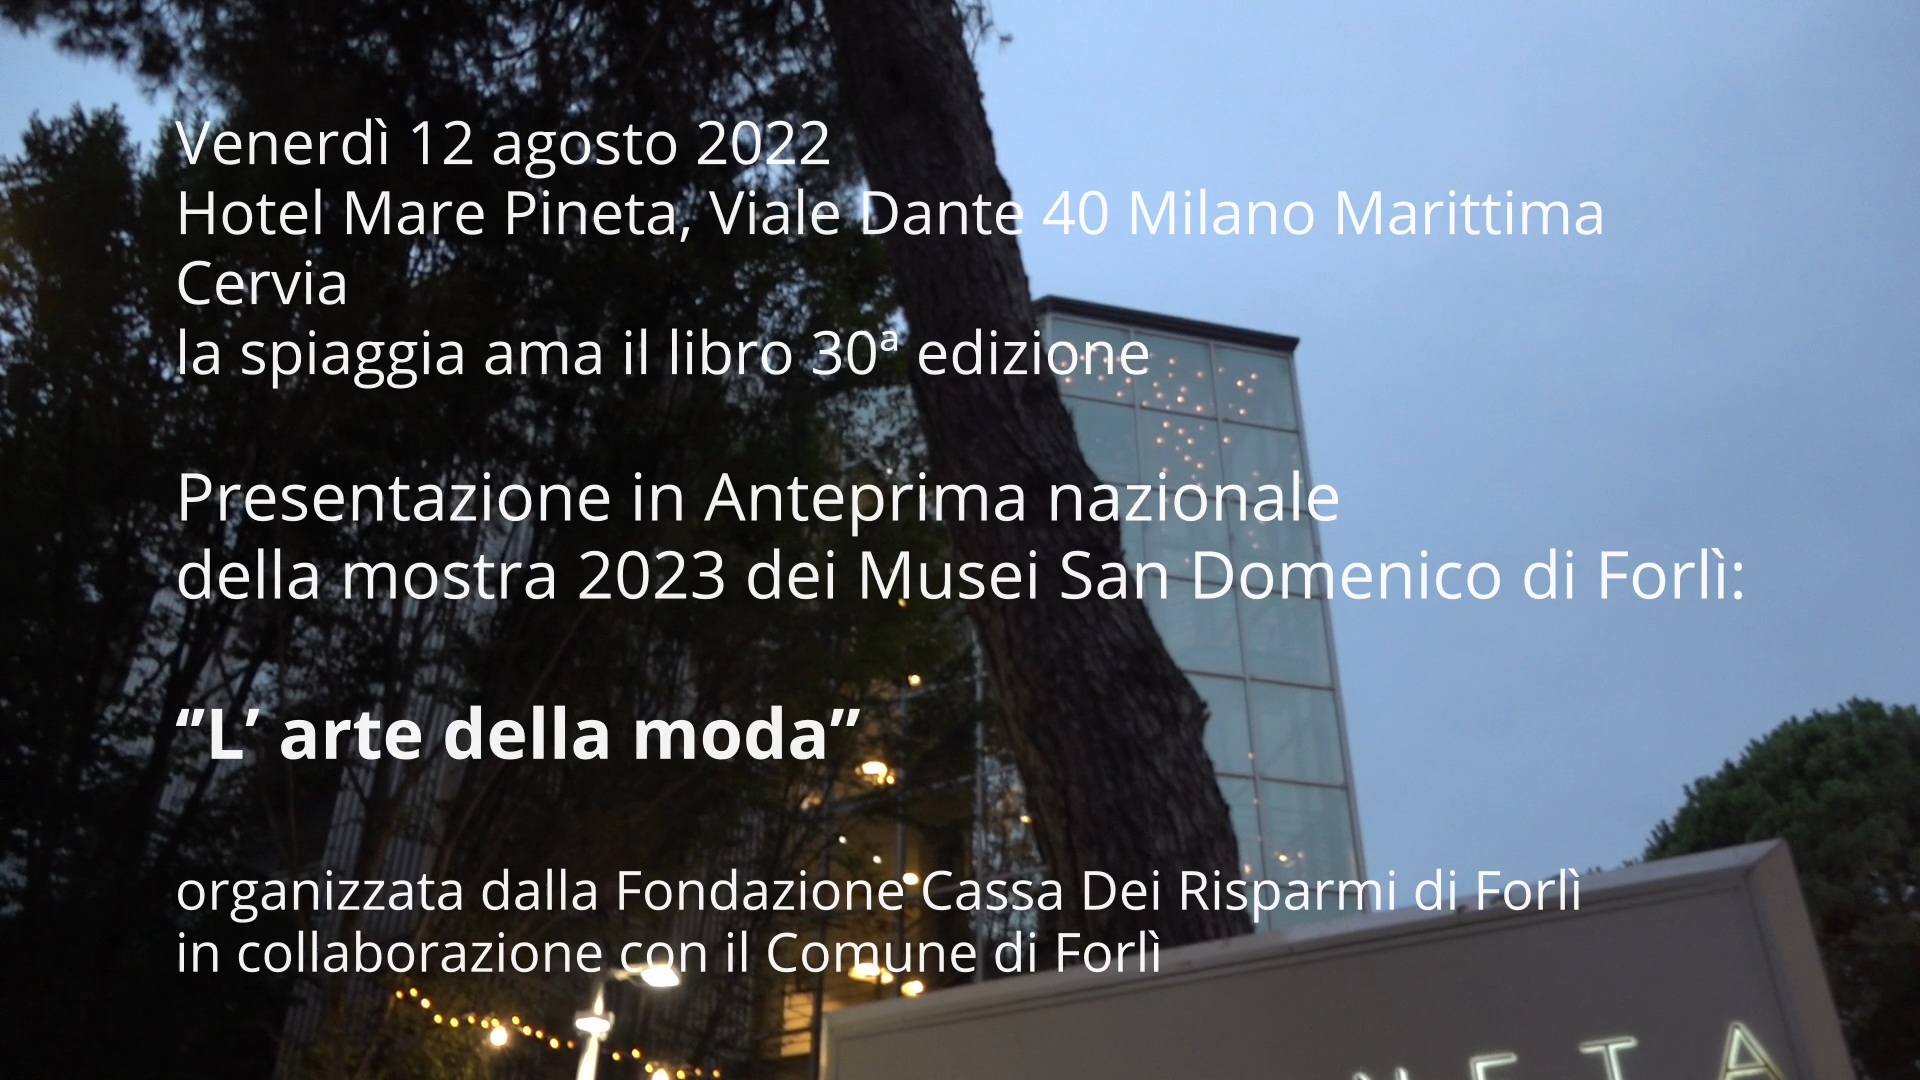 Presentazione in anteprima nazionale della mostra 2023 dei Musei San Domenico di Forlì “L’Arte della Moda”